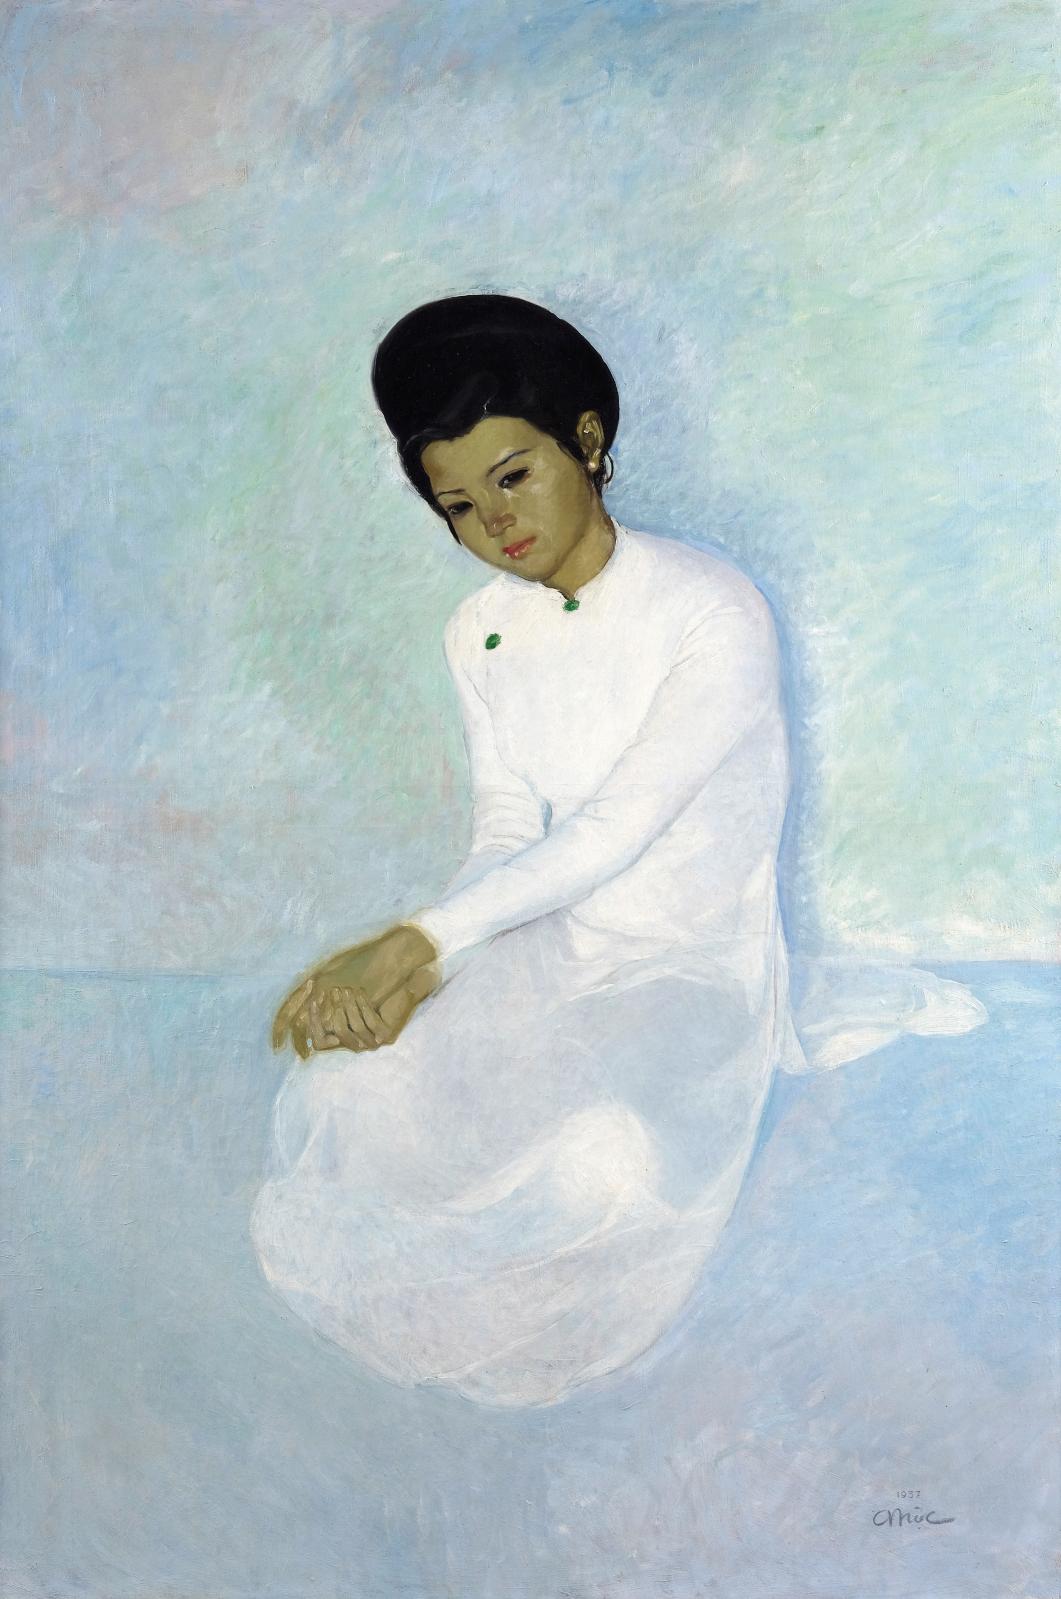 Tran Binh Loc (1914-1941), Portrait d’une élégante, 1937, huile sur toile, 153 x 103,5 cm (détail). Paris, Drouot, 1er avril 2019. Lynda T